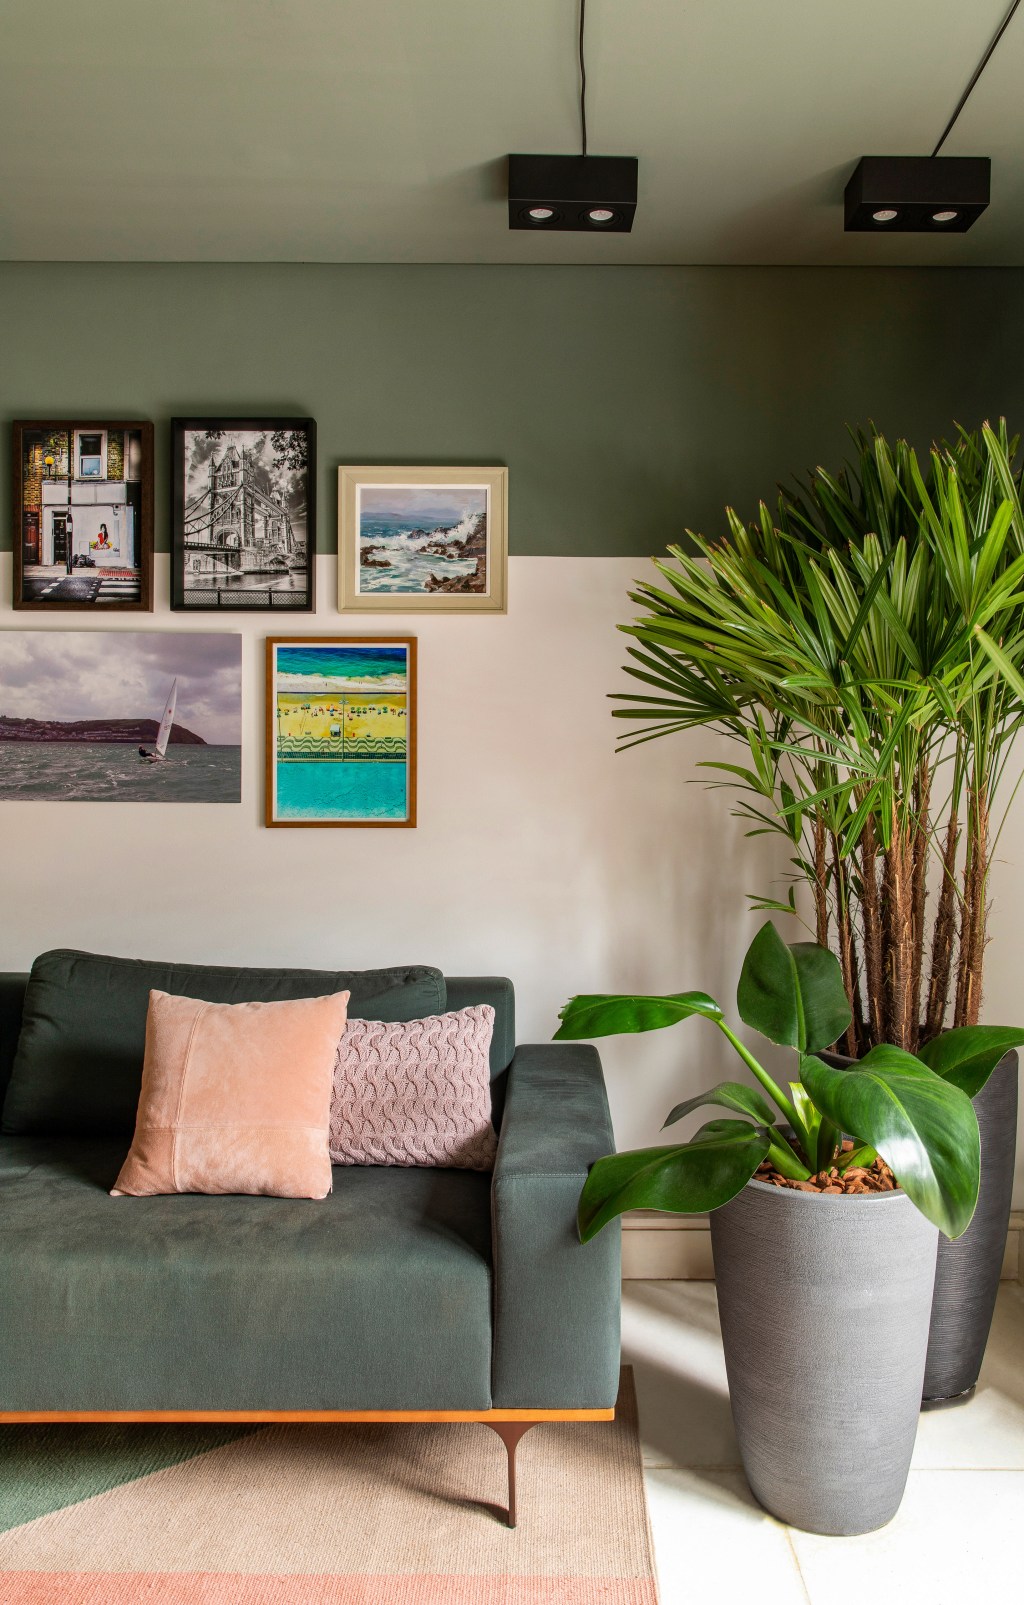 Degradê de tons de verde setoriza esta casa de vila em São Paulo. Projeto de Ricardo Abreu. Na foto, sala com parede verde, sofá e plantas.